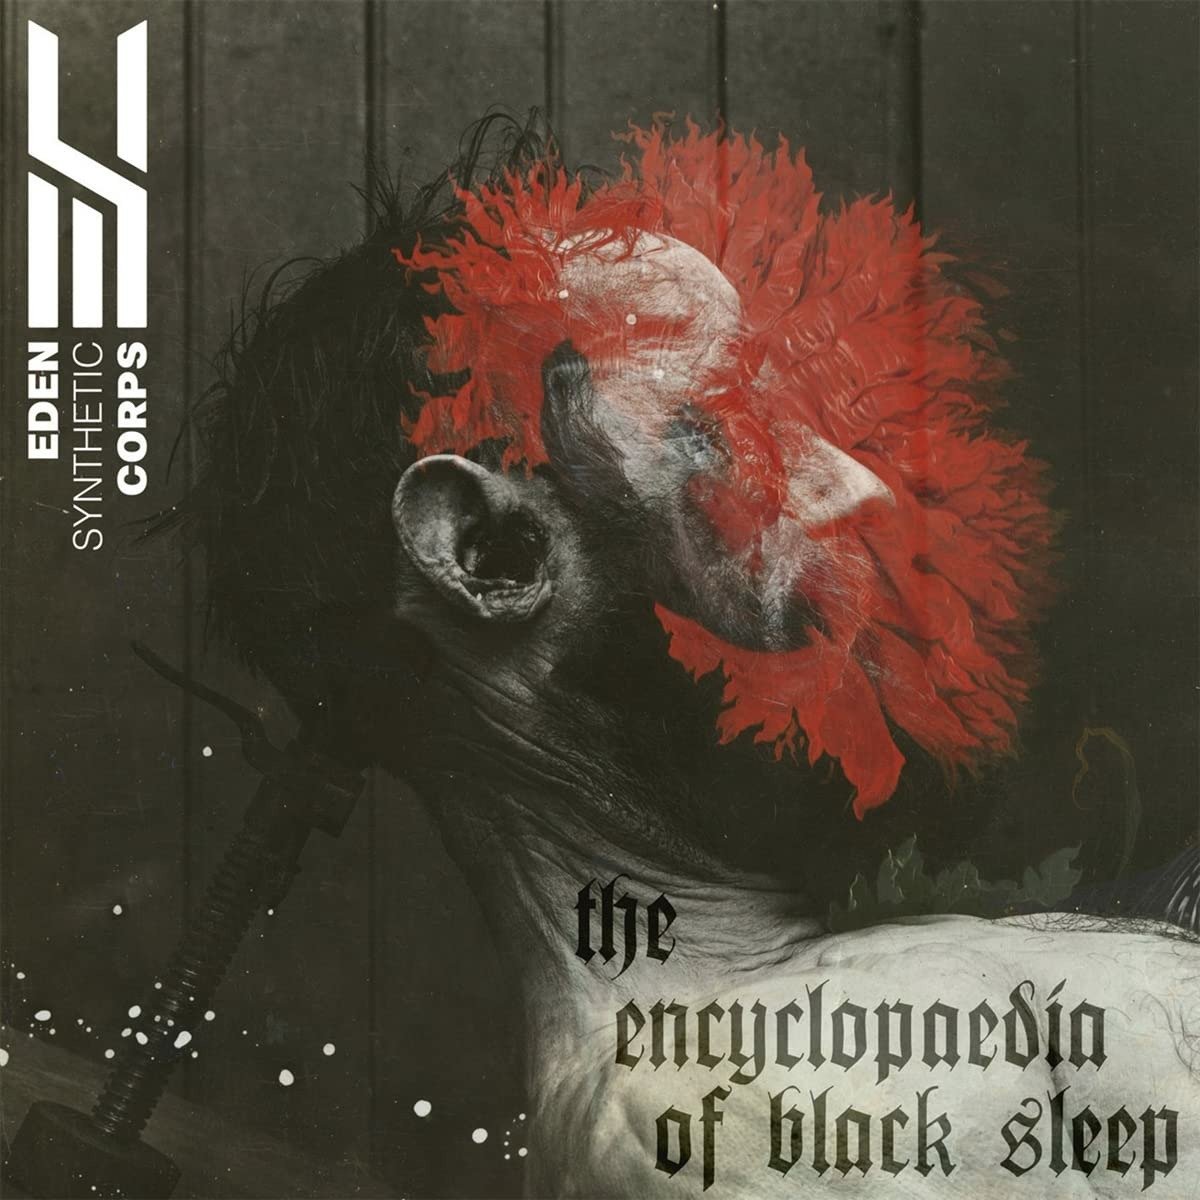 CD Shop - EDEN SYNTHETIC CORPS THE ENCYCLOPEDIA OF BLACK SHEEP